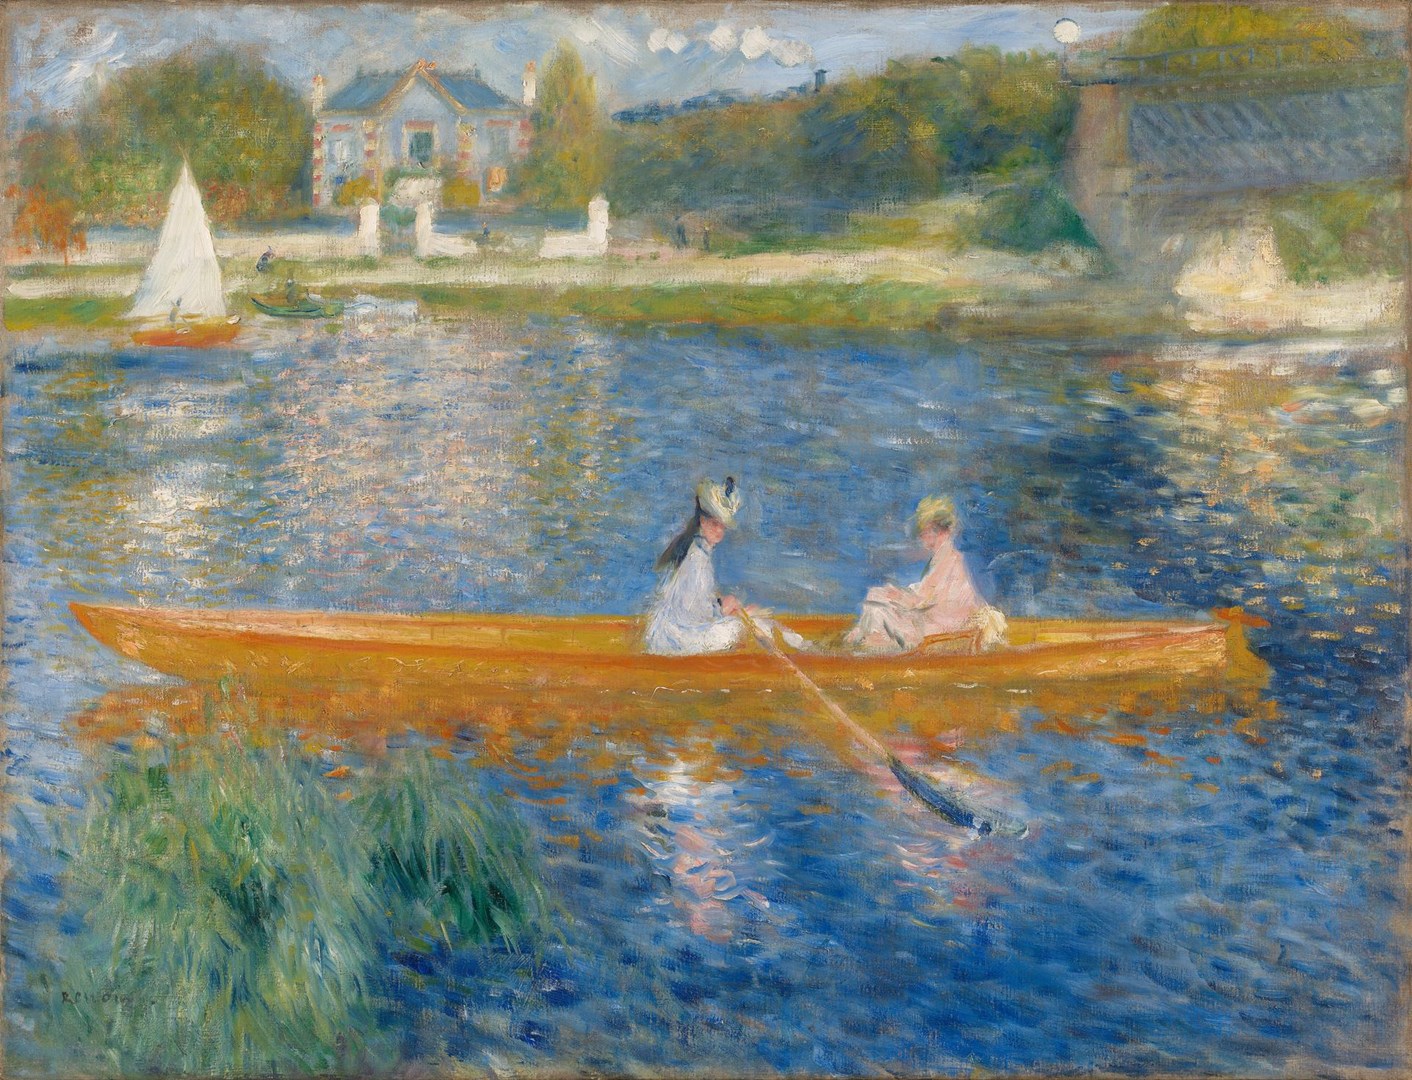 القارب  by Pierre-Auguste Renoir - ١٨٧٥  - ٩٢ سم x ٧١  